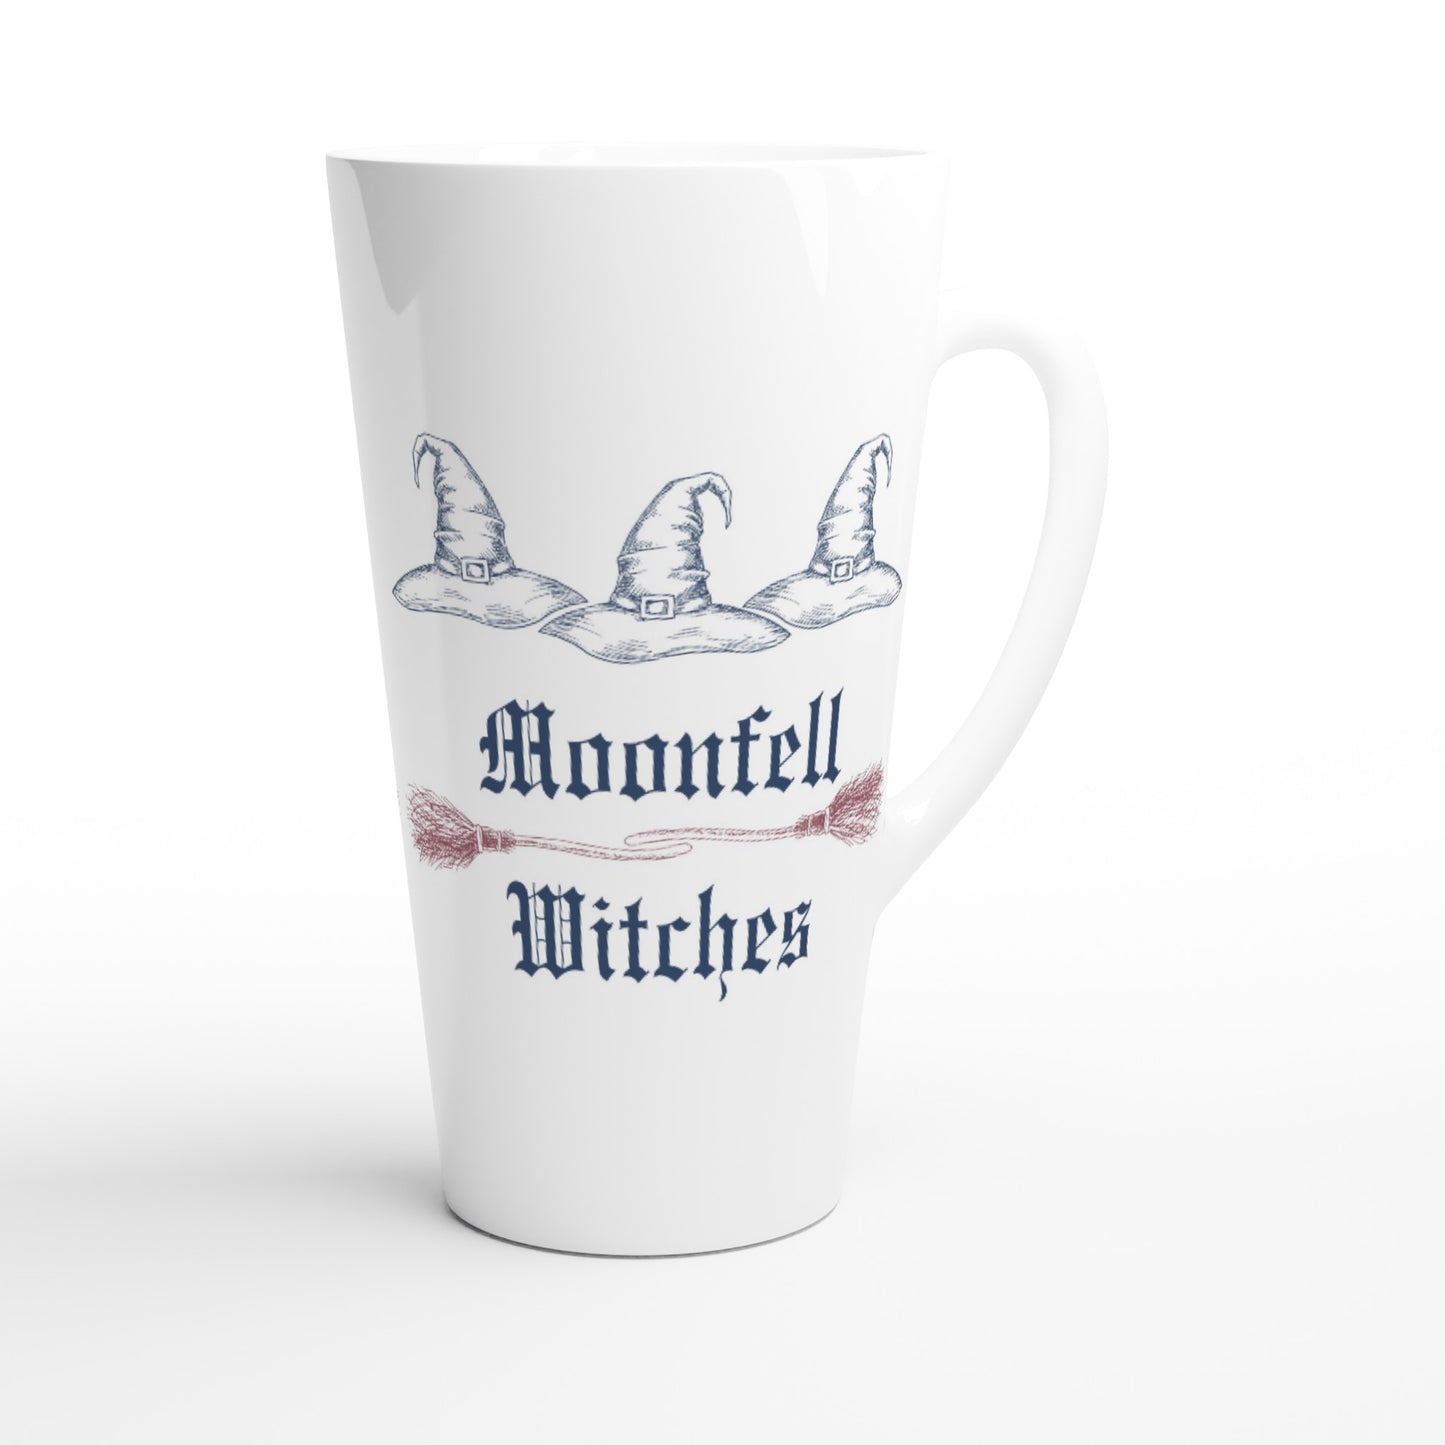 Moonfell Witches White Latte 17oz Ceramic Mug